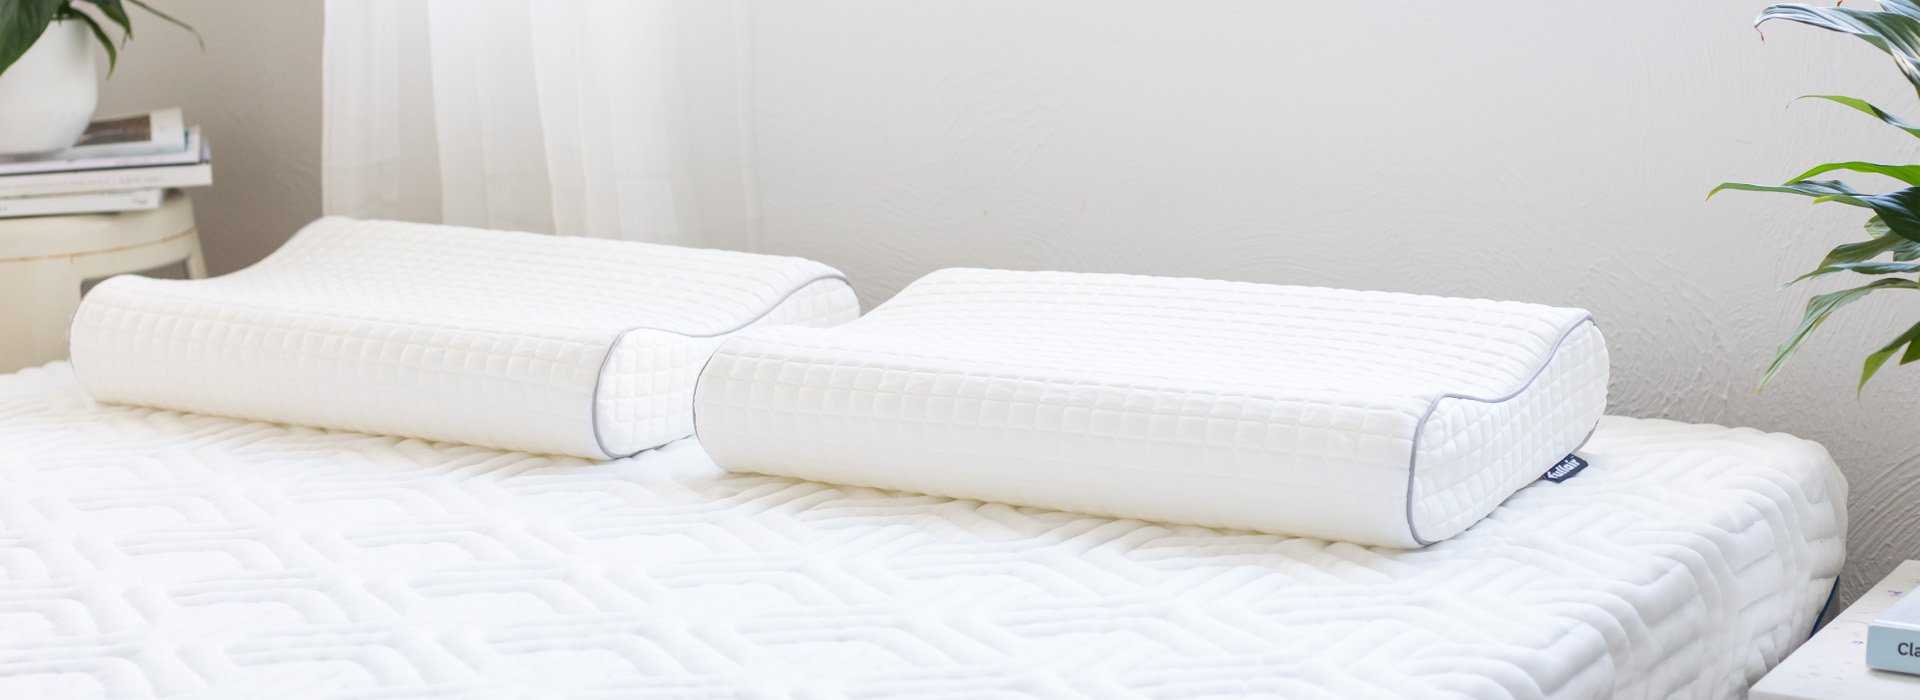 Two Fullair pillows on a mattress.